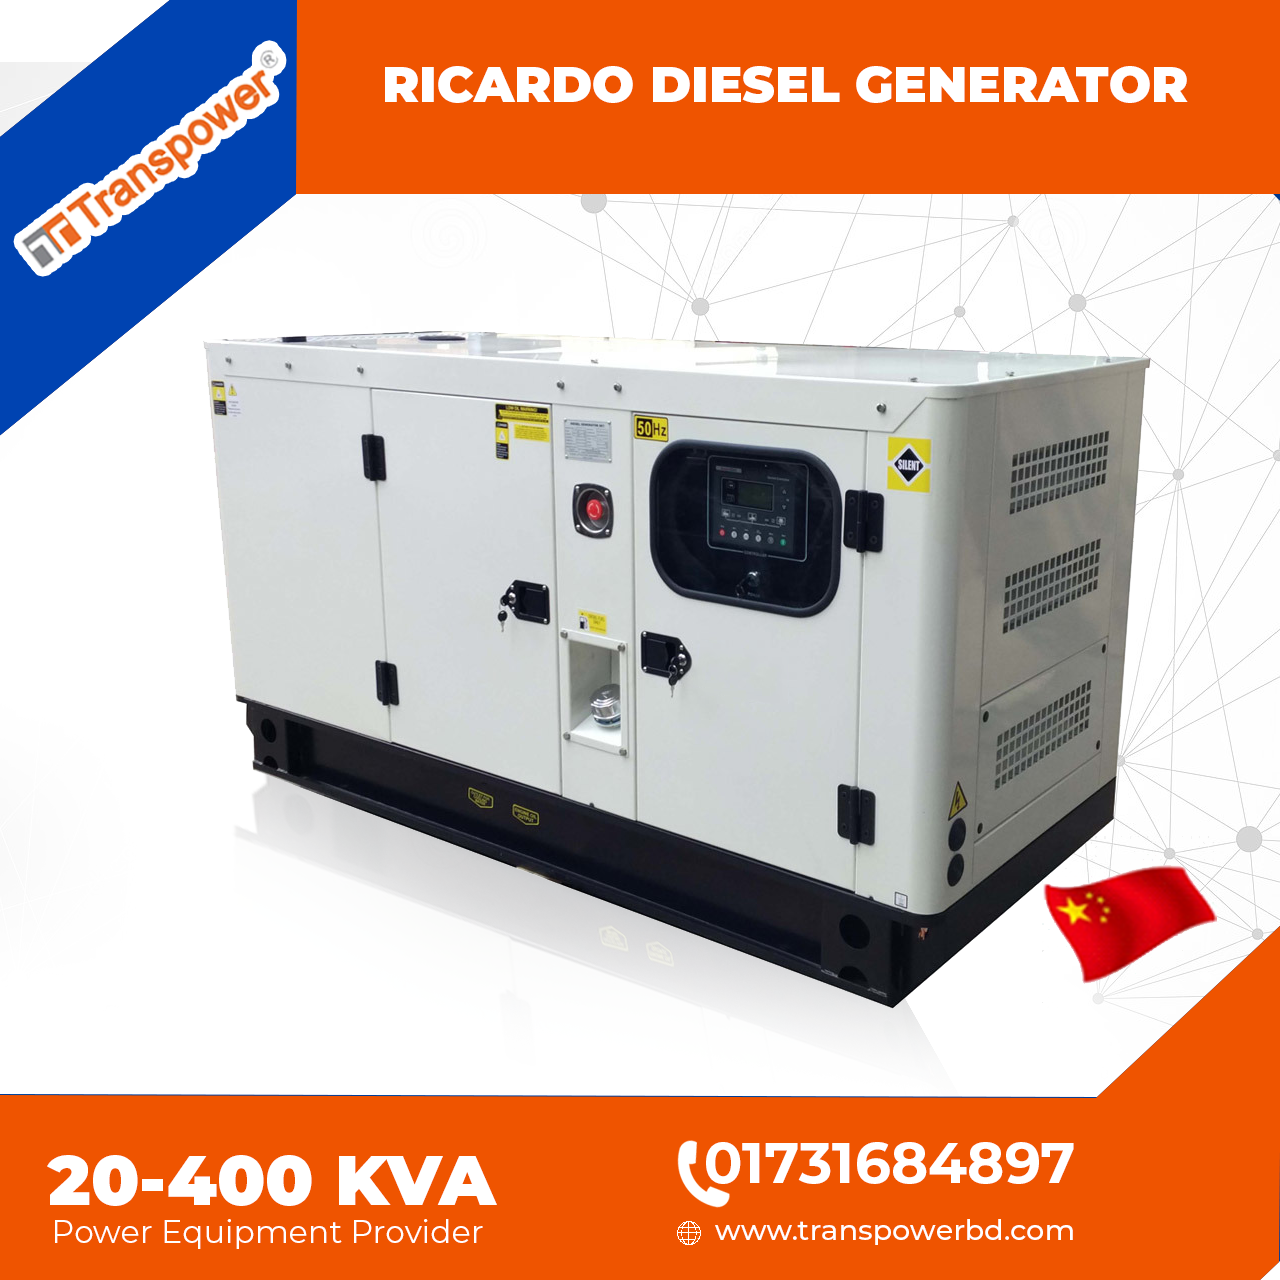 100 KVA Ricardo Diesel Generator (Origin: China)